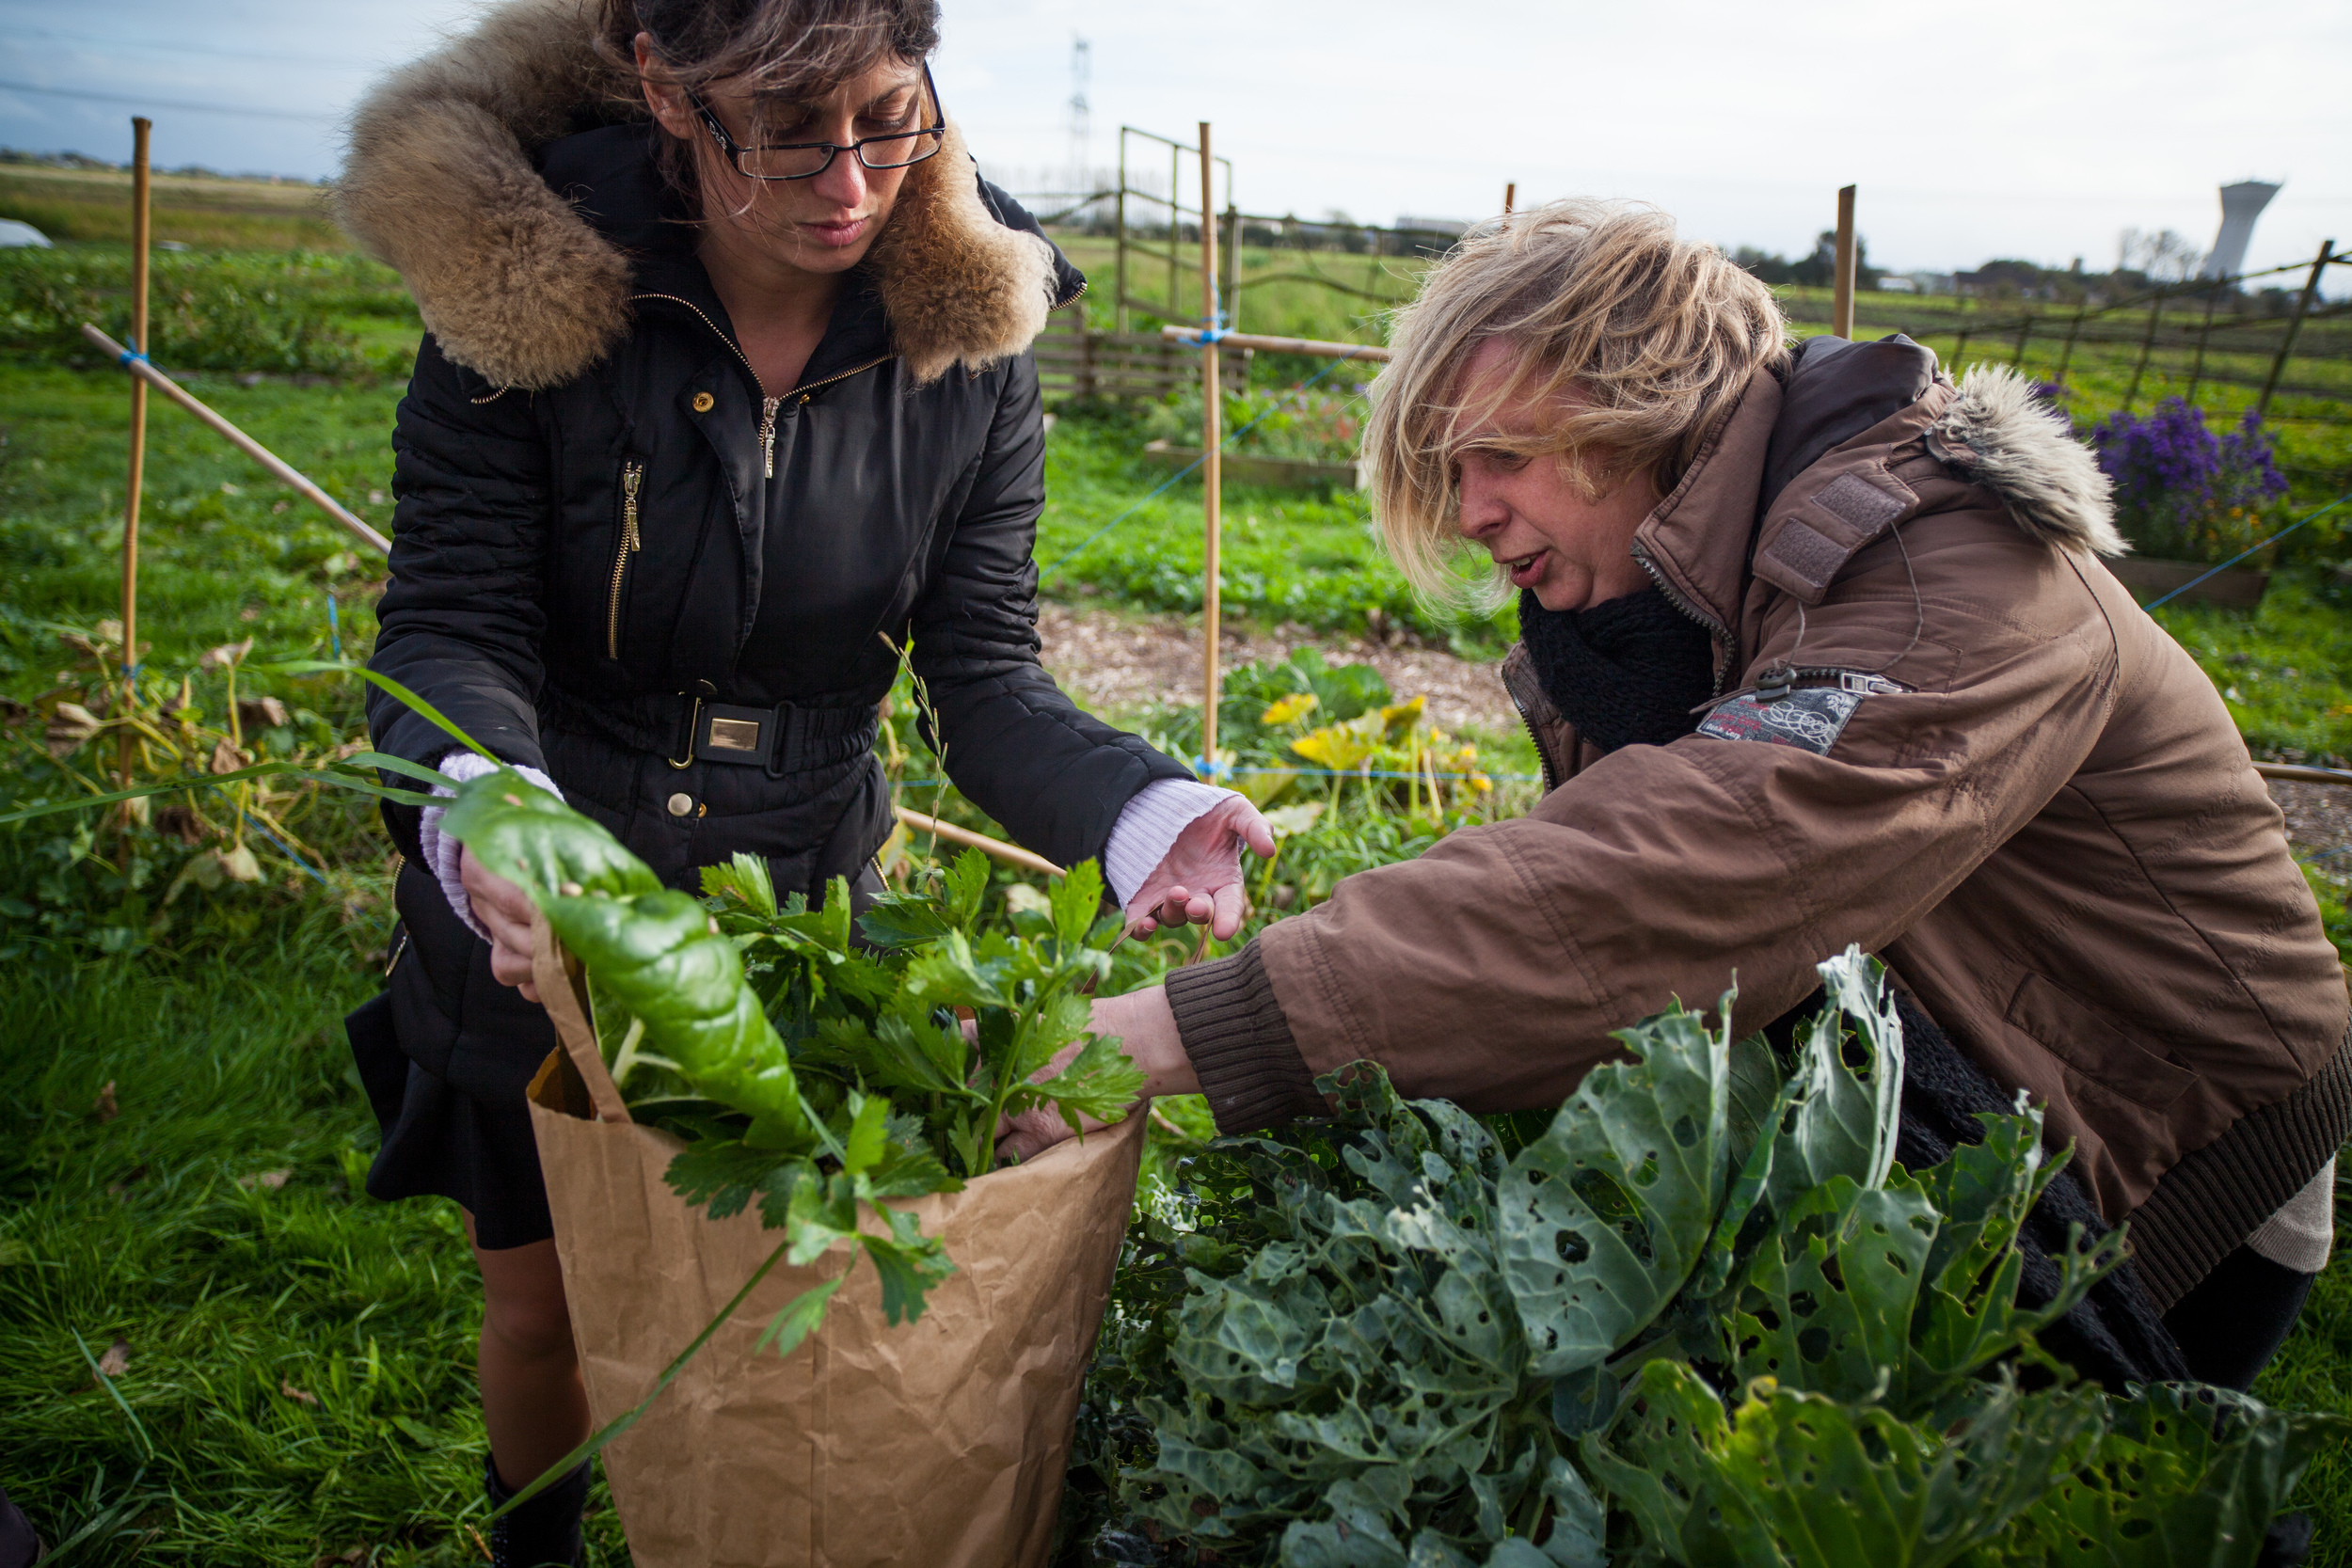  L'écopôle alimentaire basée à Vieille-Eglise dans le Pas-de-Calais propose une agriculture biologique et solidaire. Les fruits et légumes sont produits par des personnes en réinsertion, et des “paniers solidaires” sont distribués aux familles défavo